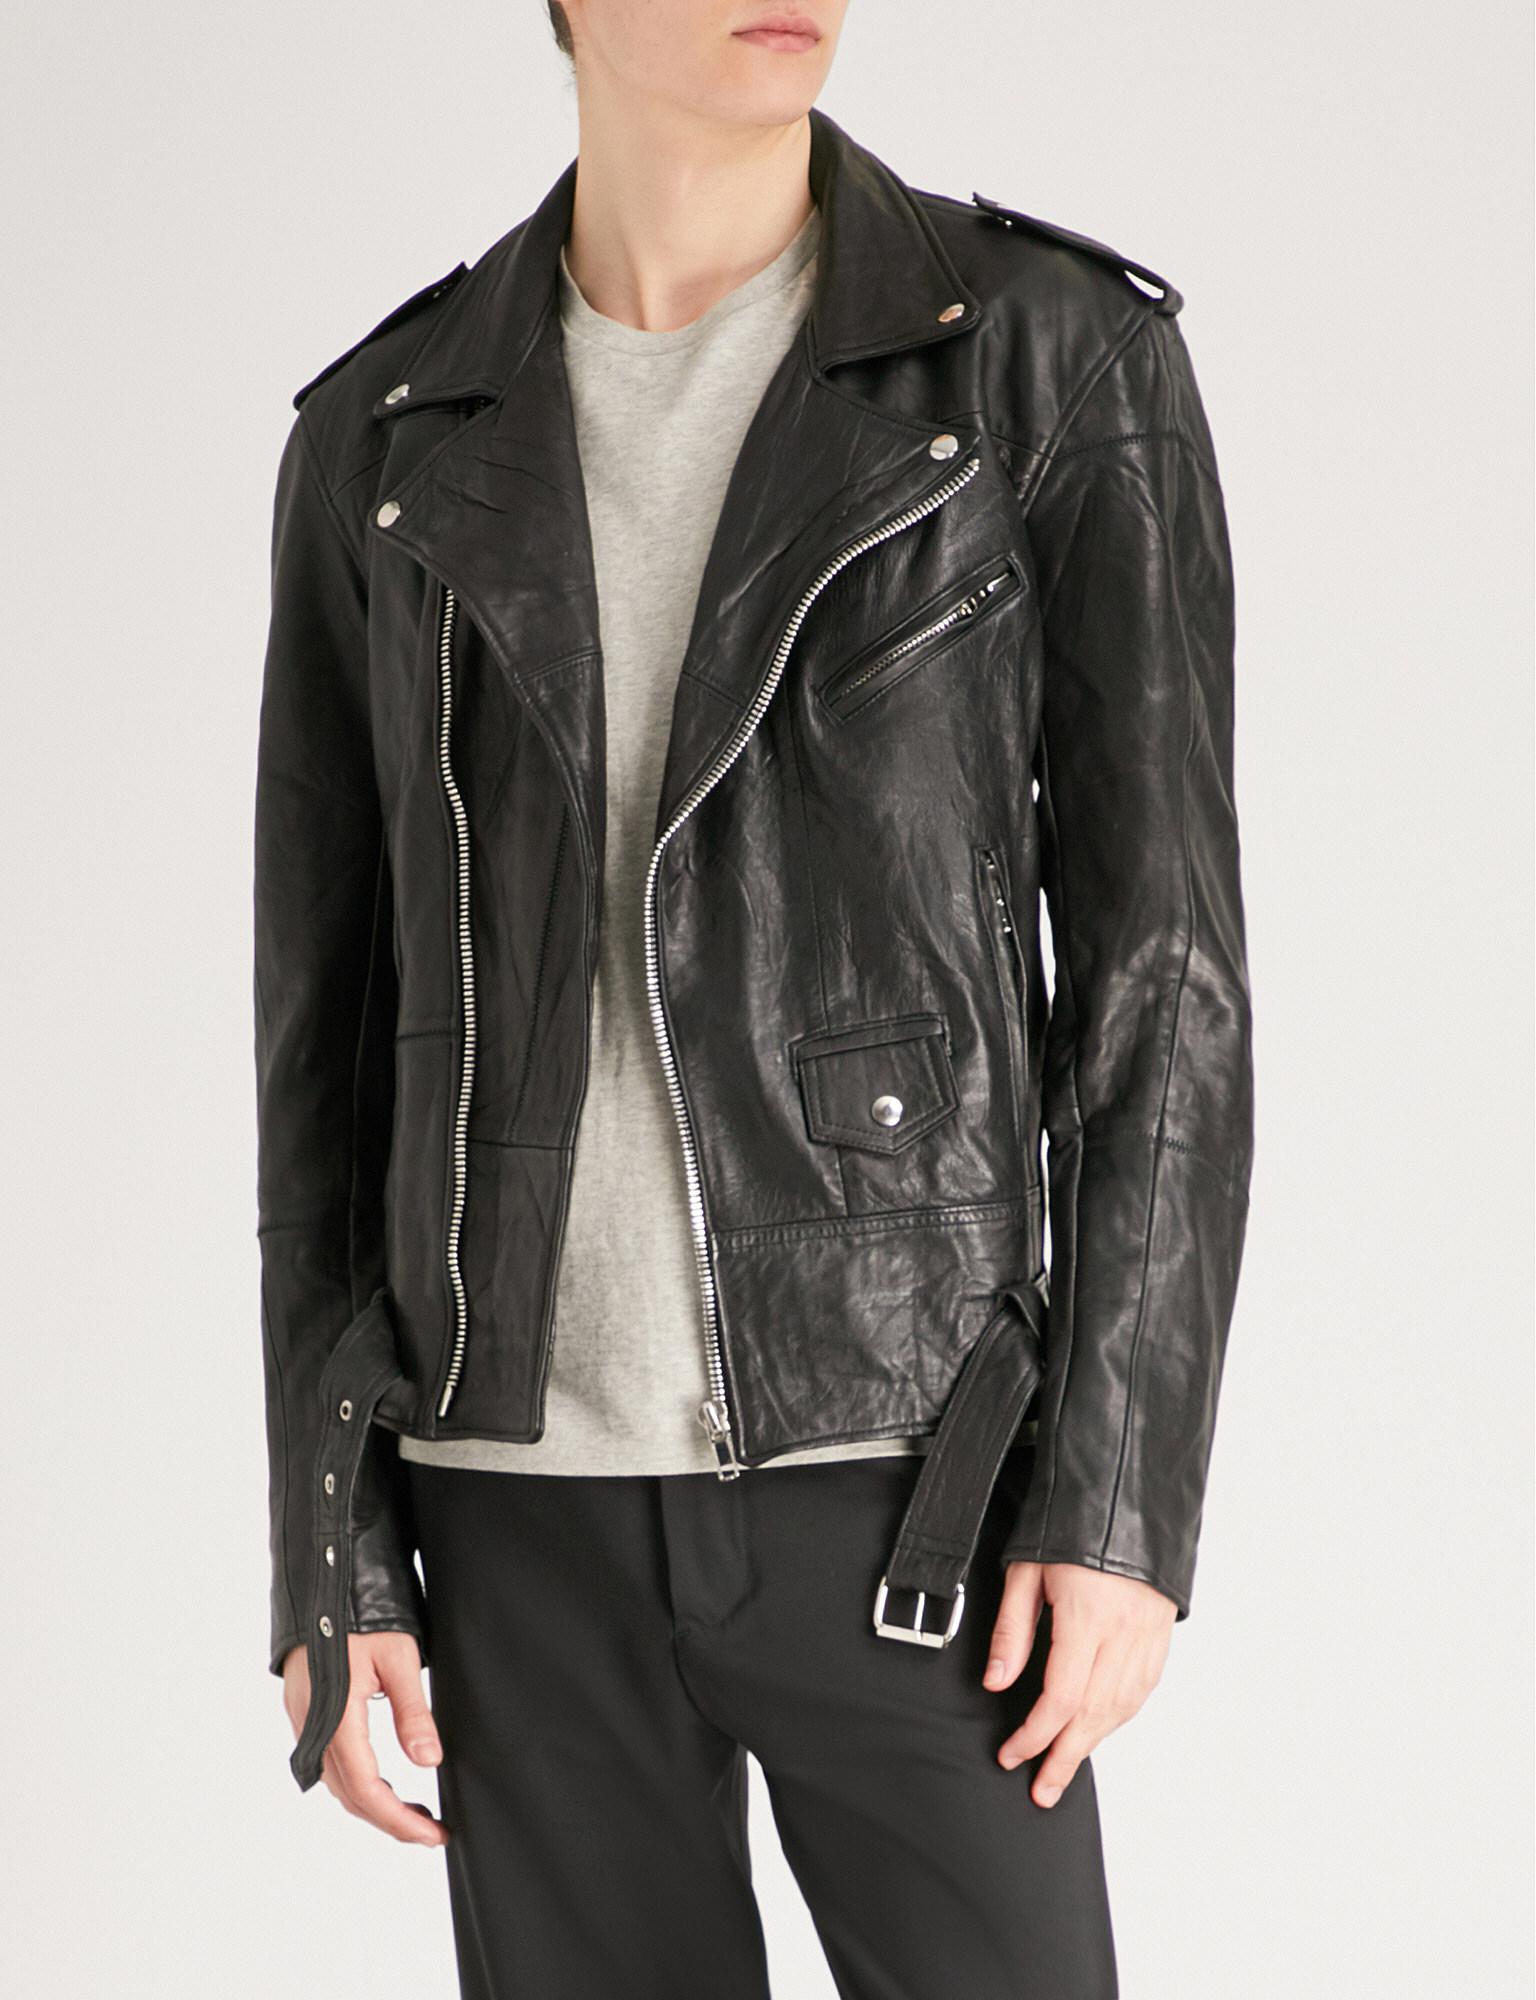 DEADWOOD Leroy Leather Biker Jacket in Black for Men | Lyst